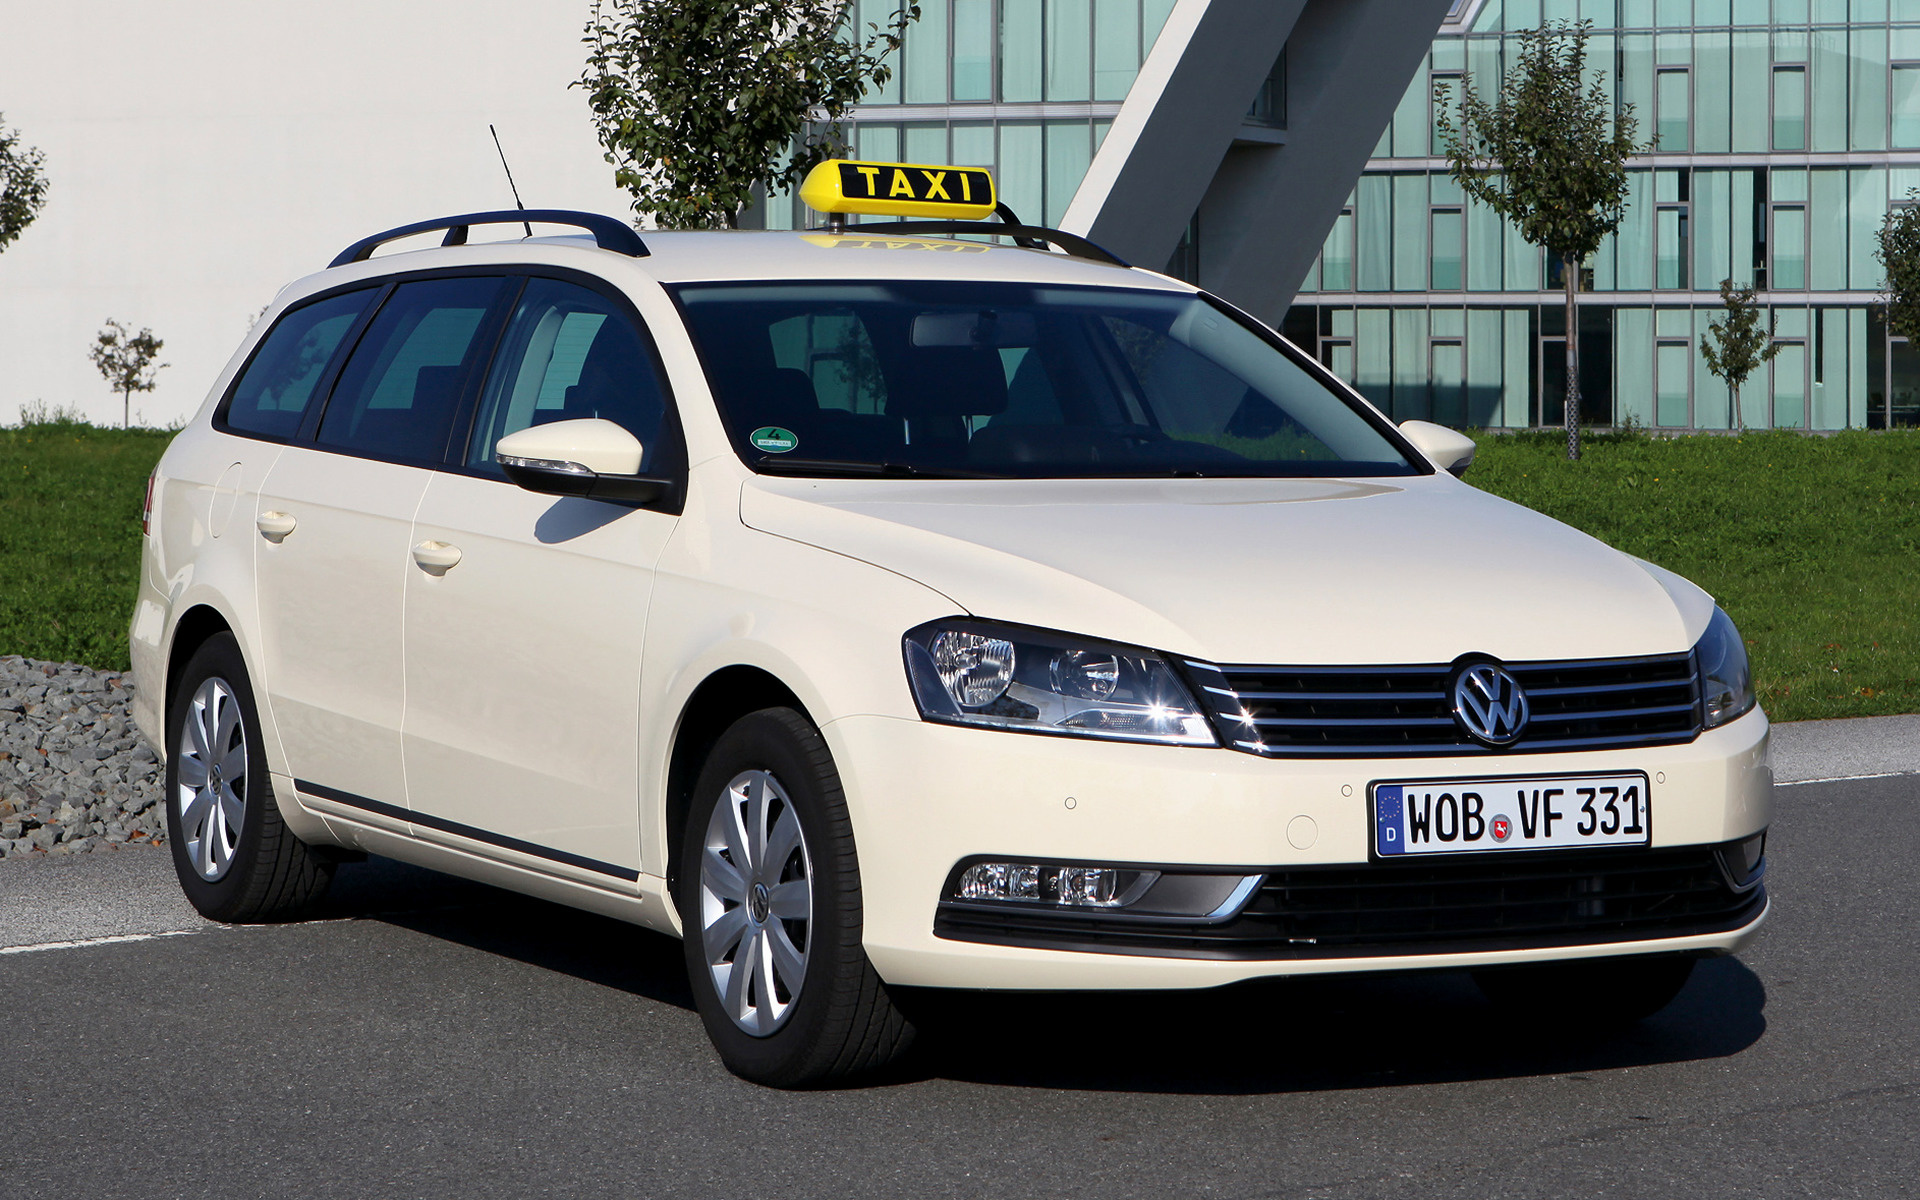 2010 Volkswagen Passat Variant Taxi - Skrivbordsbakgrund #44821.